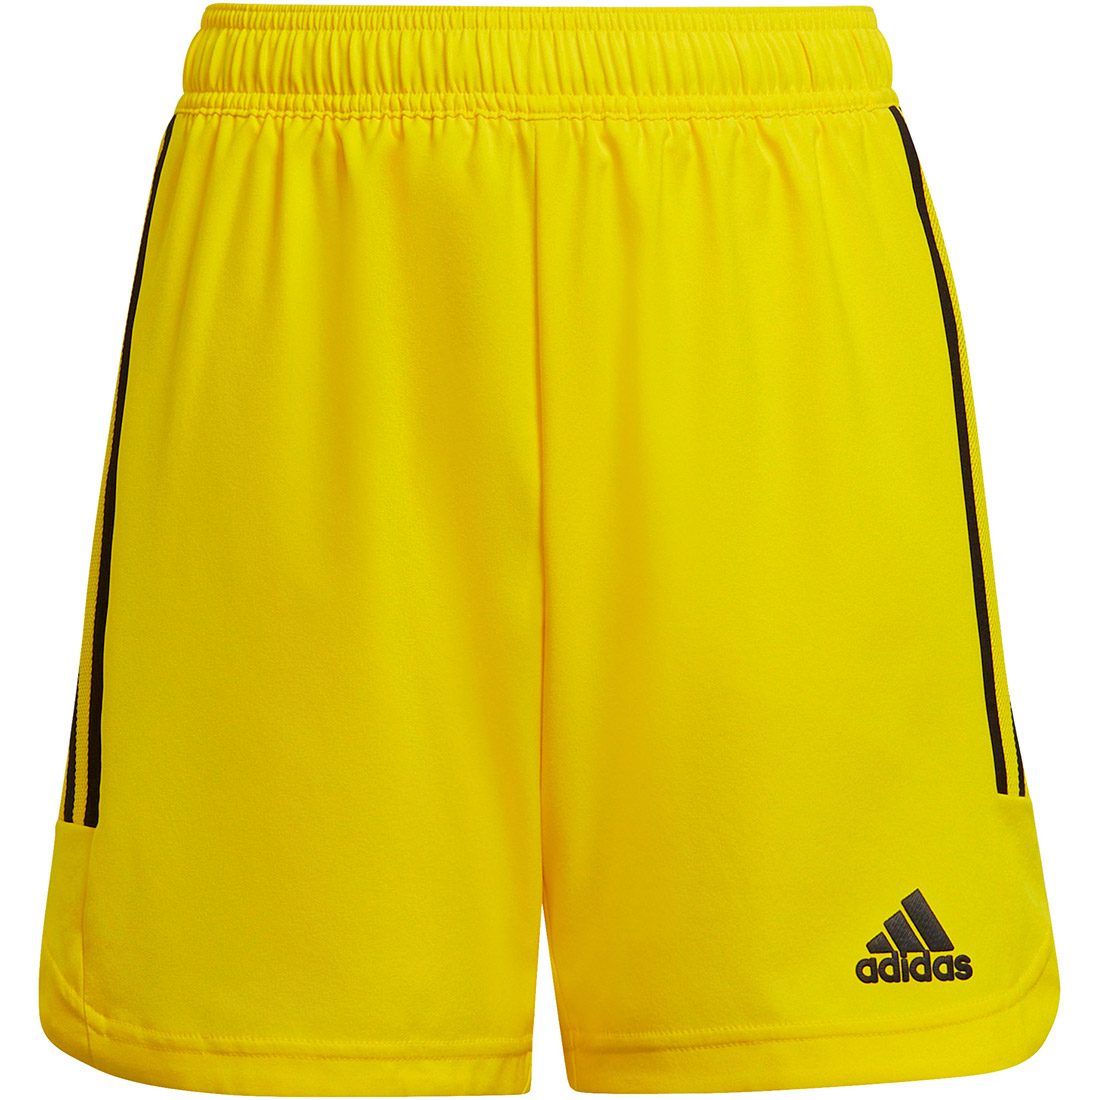 Adidas Kinder MD Shorts Condivo 22 gelb-schwarz